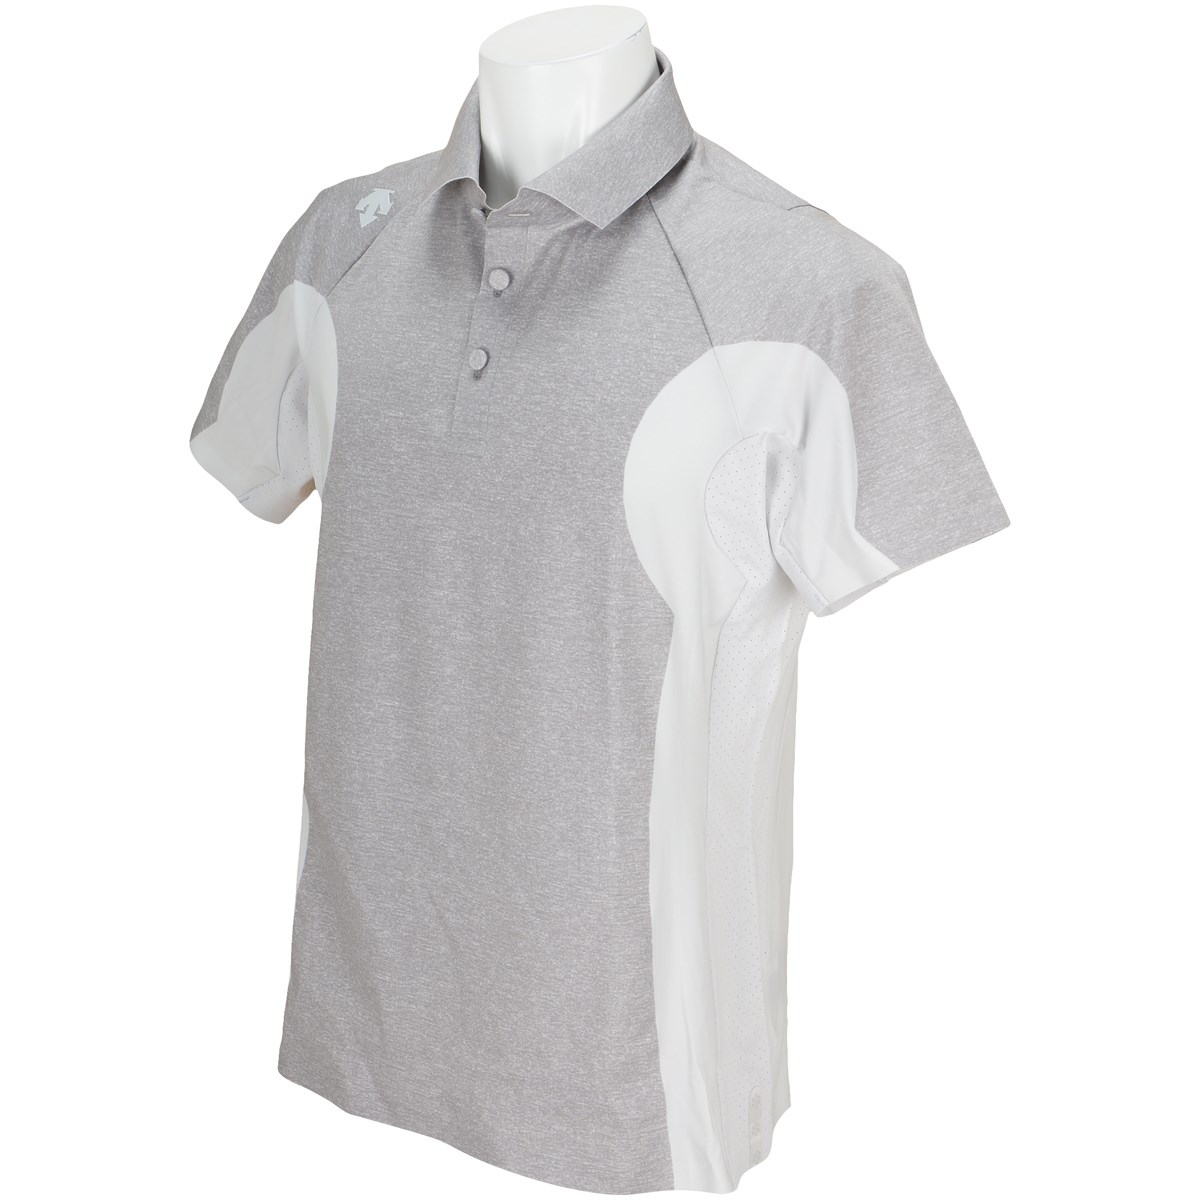  [定番モデル] デサントゴルフ ストレッチ半袖ポロシャツ ゴルフウェア